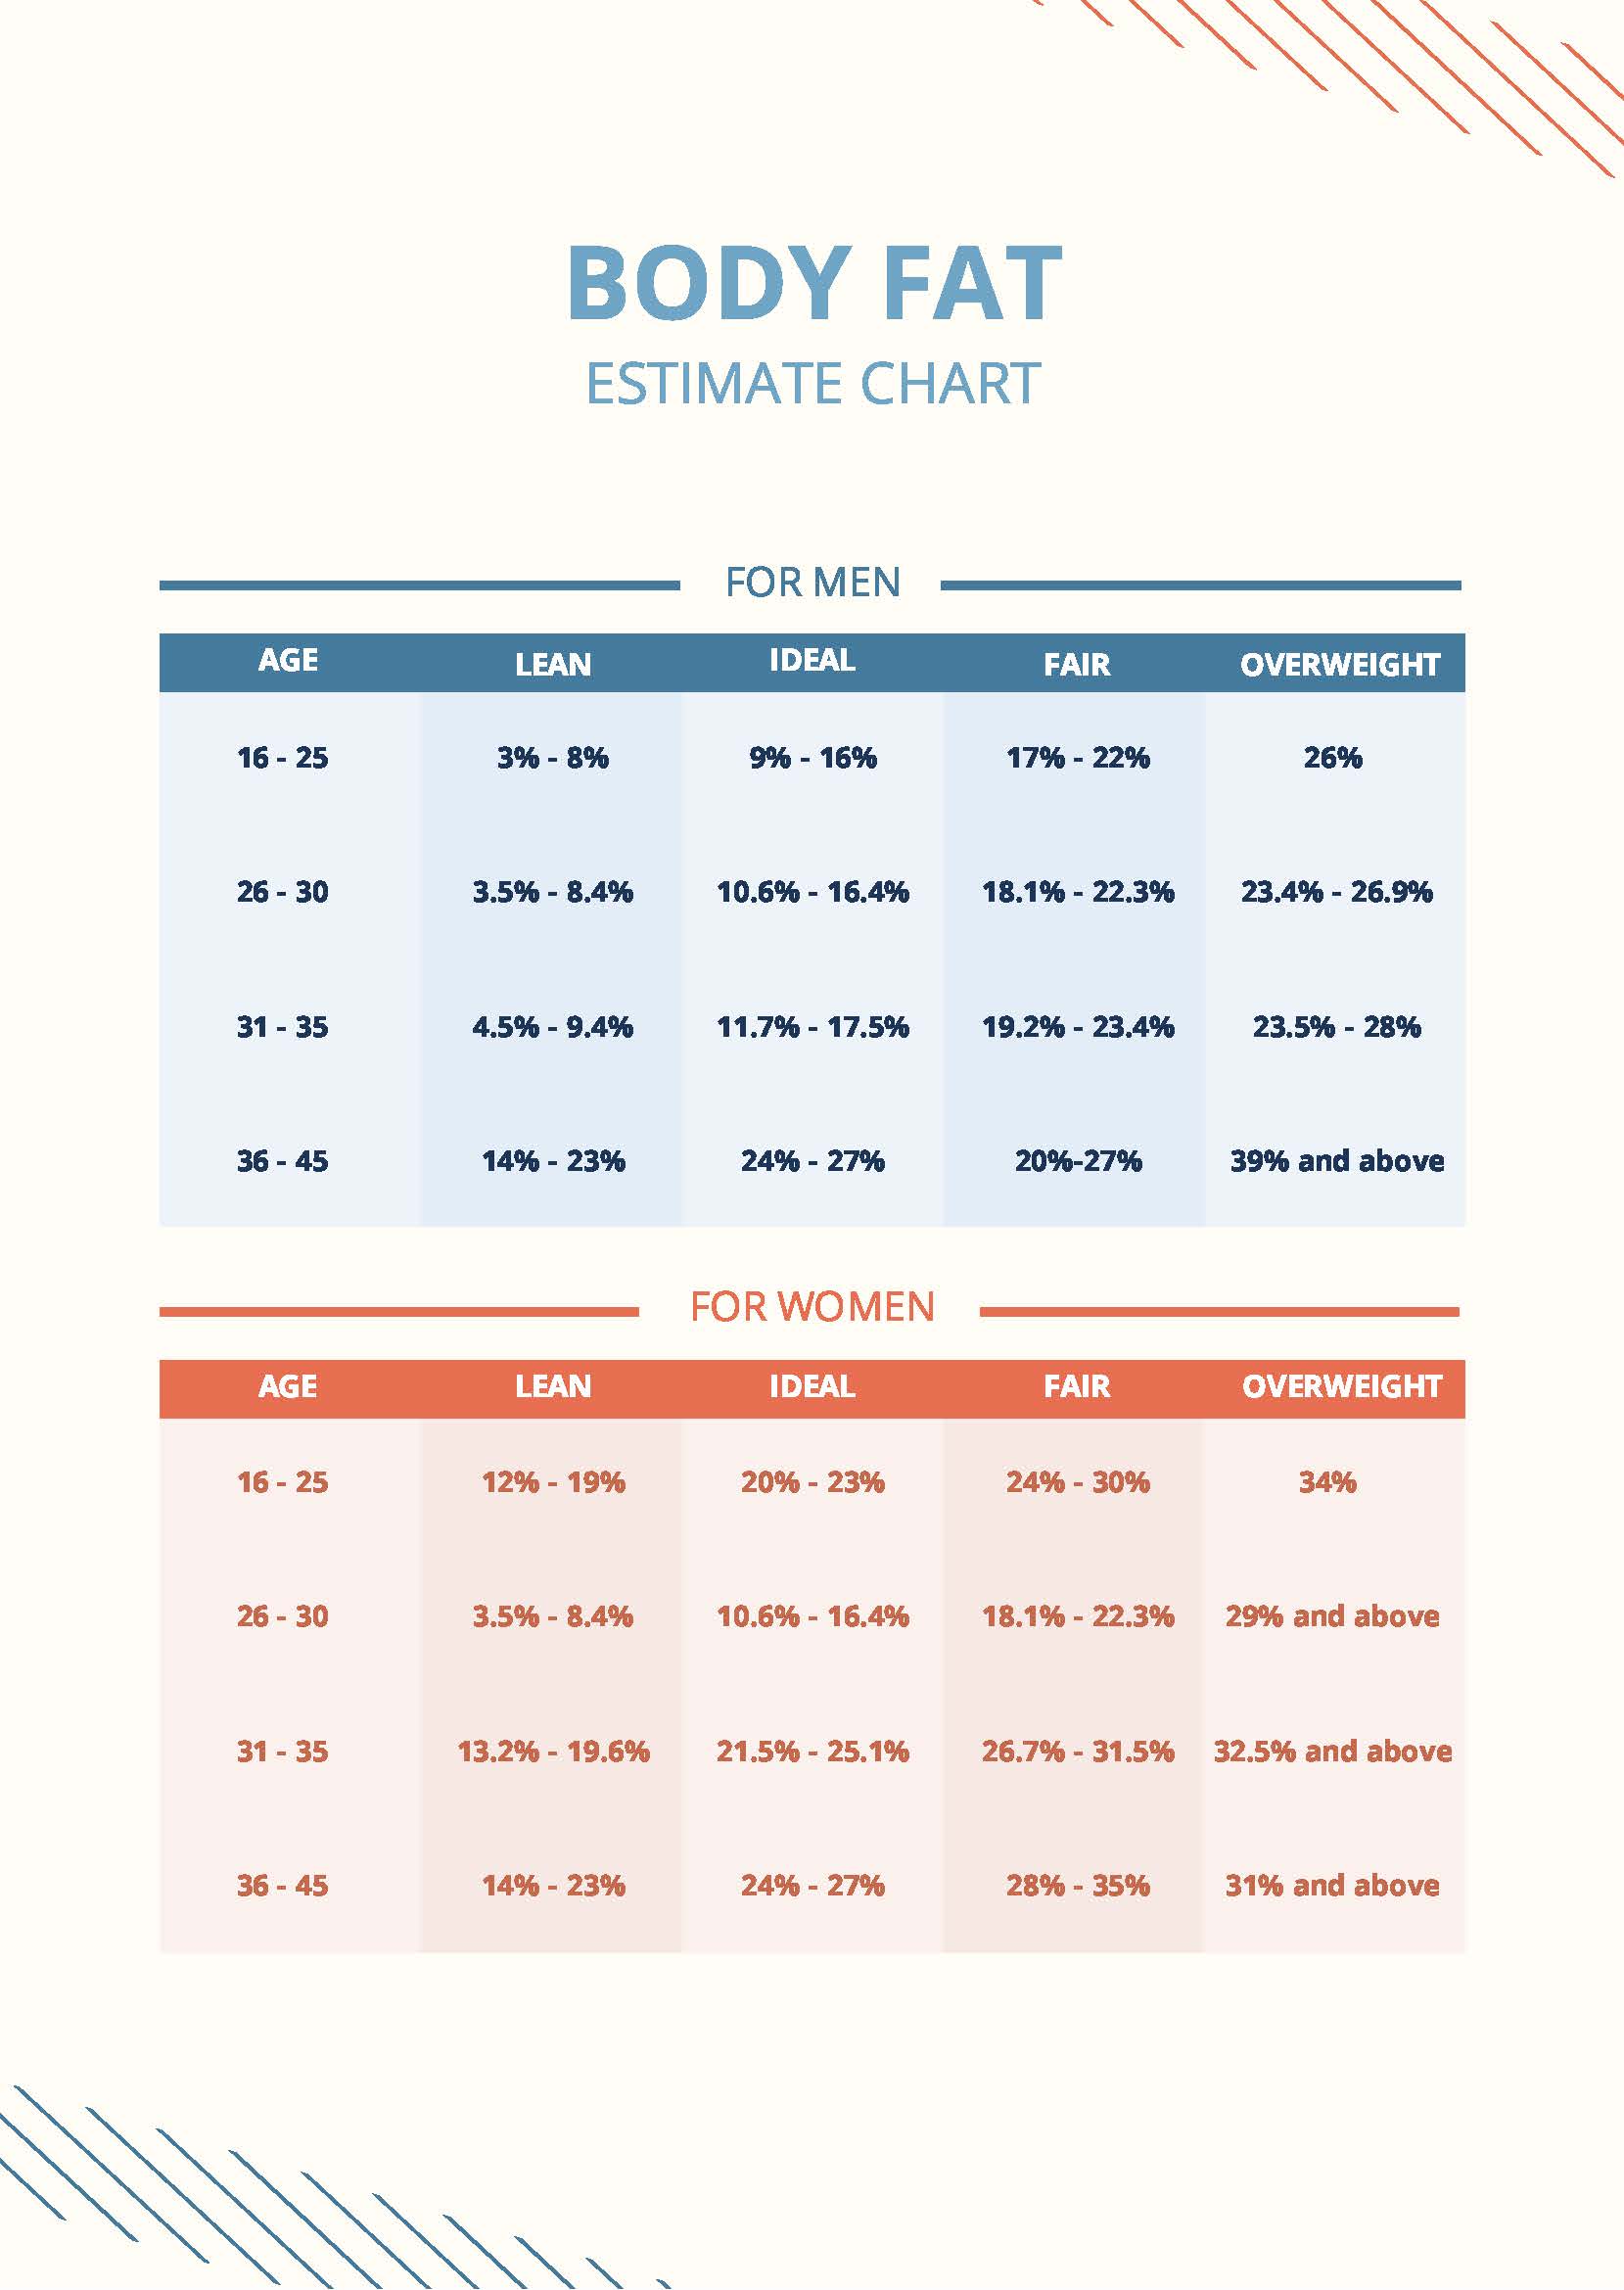 Body Fat Estimate Chart in PDF